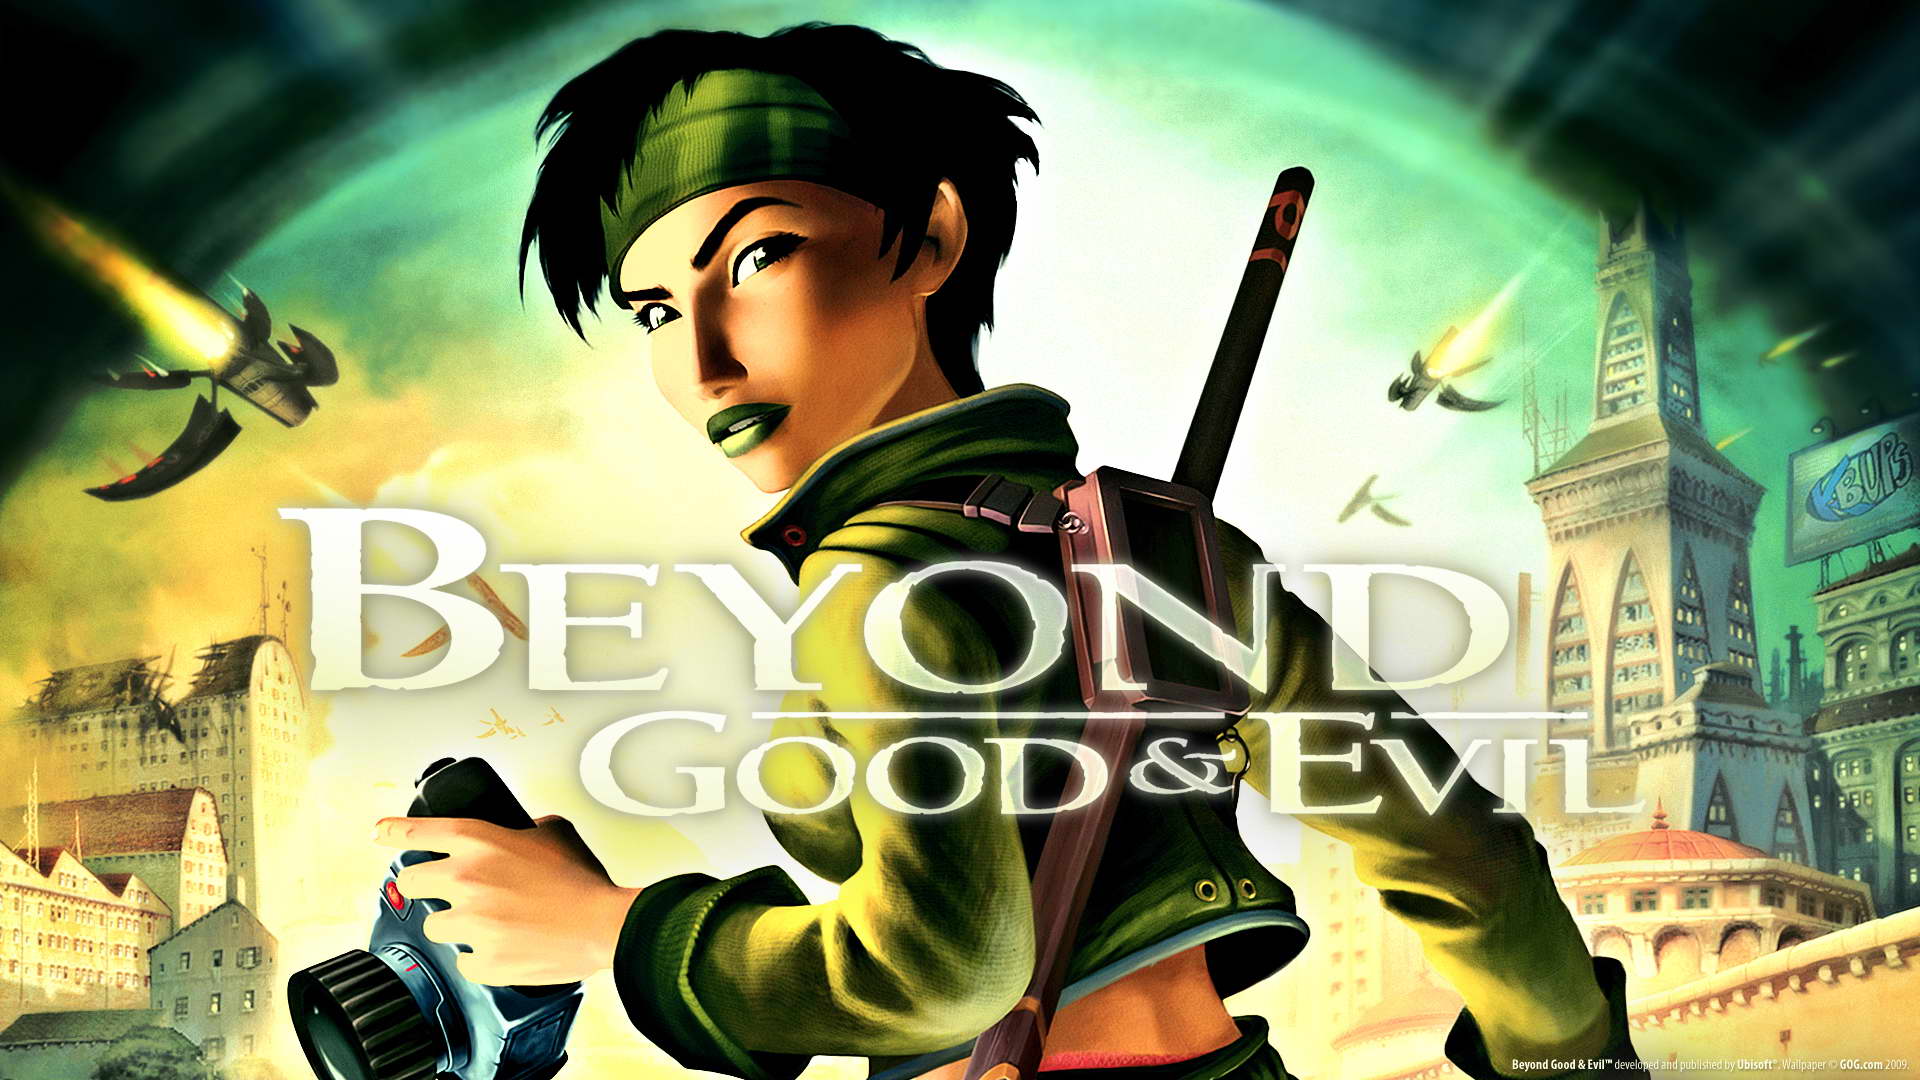 Beyond Good & Evil được tặng miễn phí trên uPlay - Tin Game